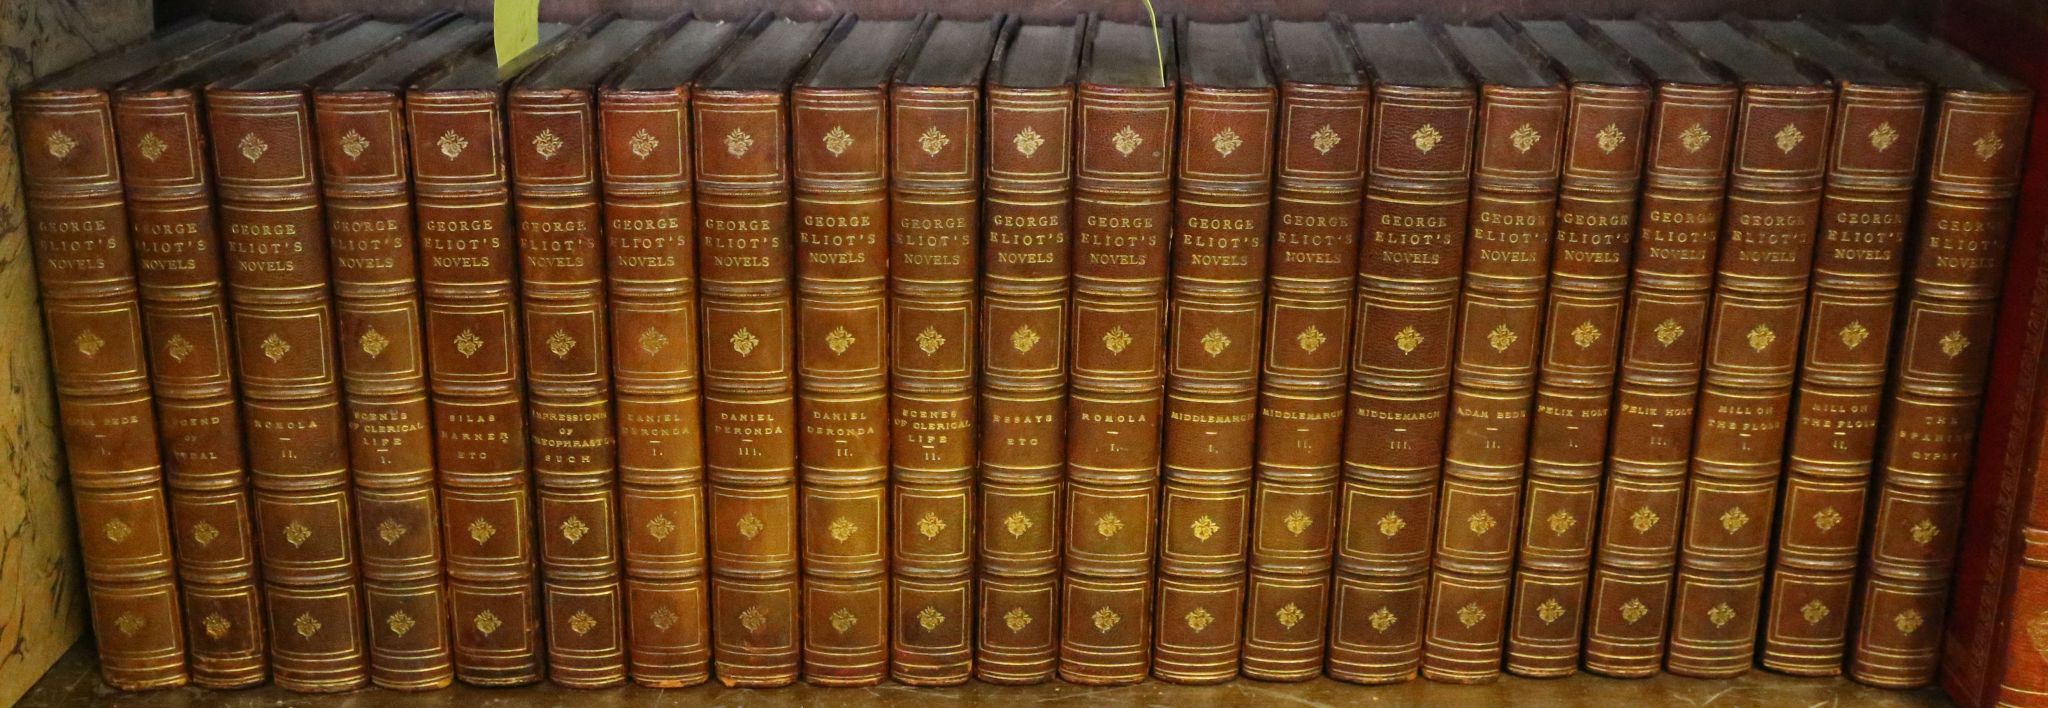 BINDINGS - George ELIOT (1819-80).  The Works. Edinburgh: William Blackwood, [n.d.]. 21 volumes, 8vo